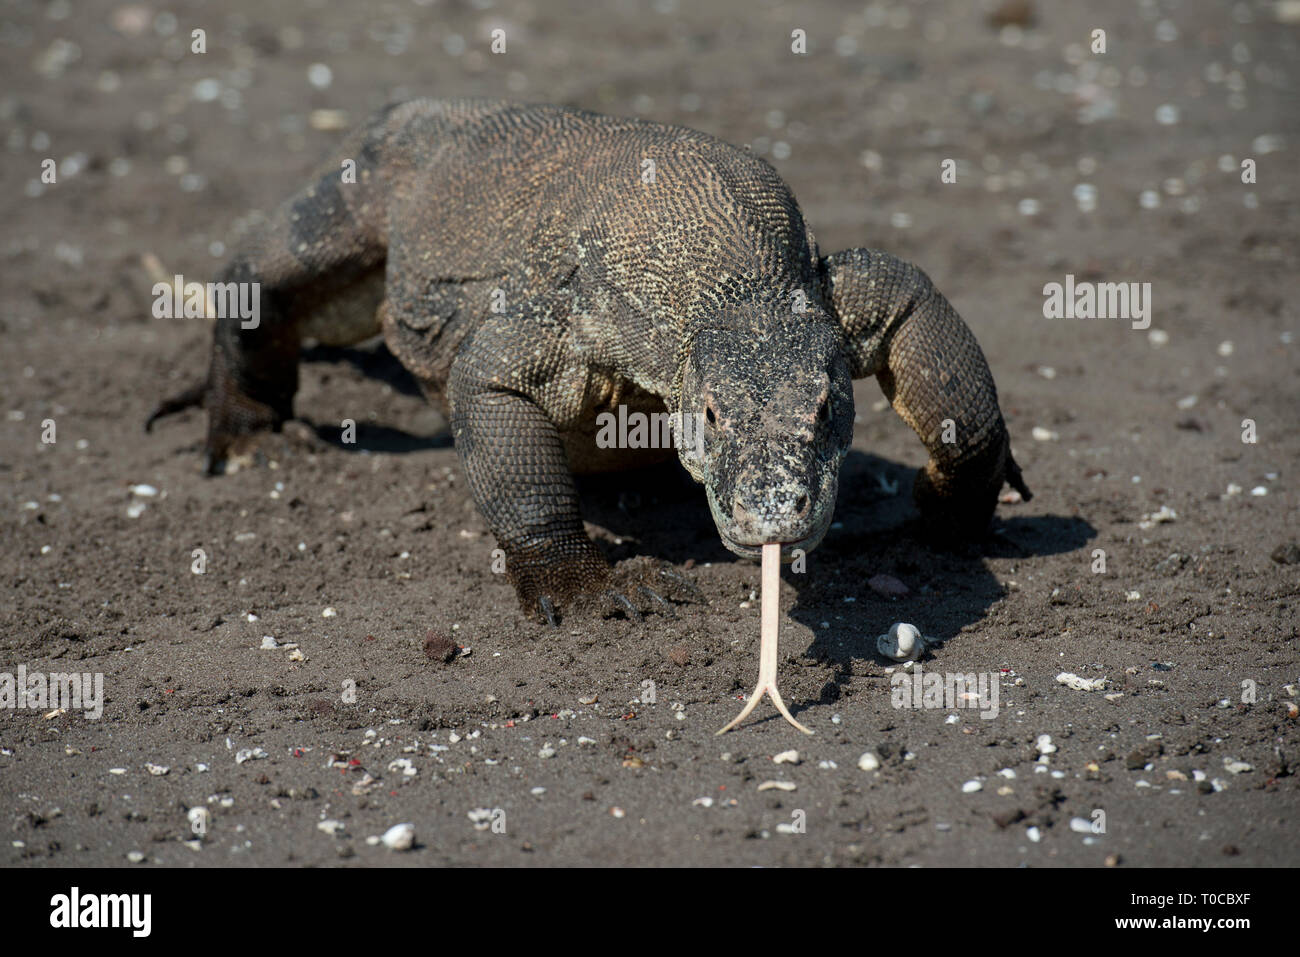 Komodo Dragon, Varanus komodoensis, smelling with tongue on beach, Horseshoe Bay, south Rinca Island, Komodo National Park, Indonesia Stock Photo